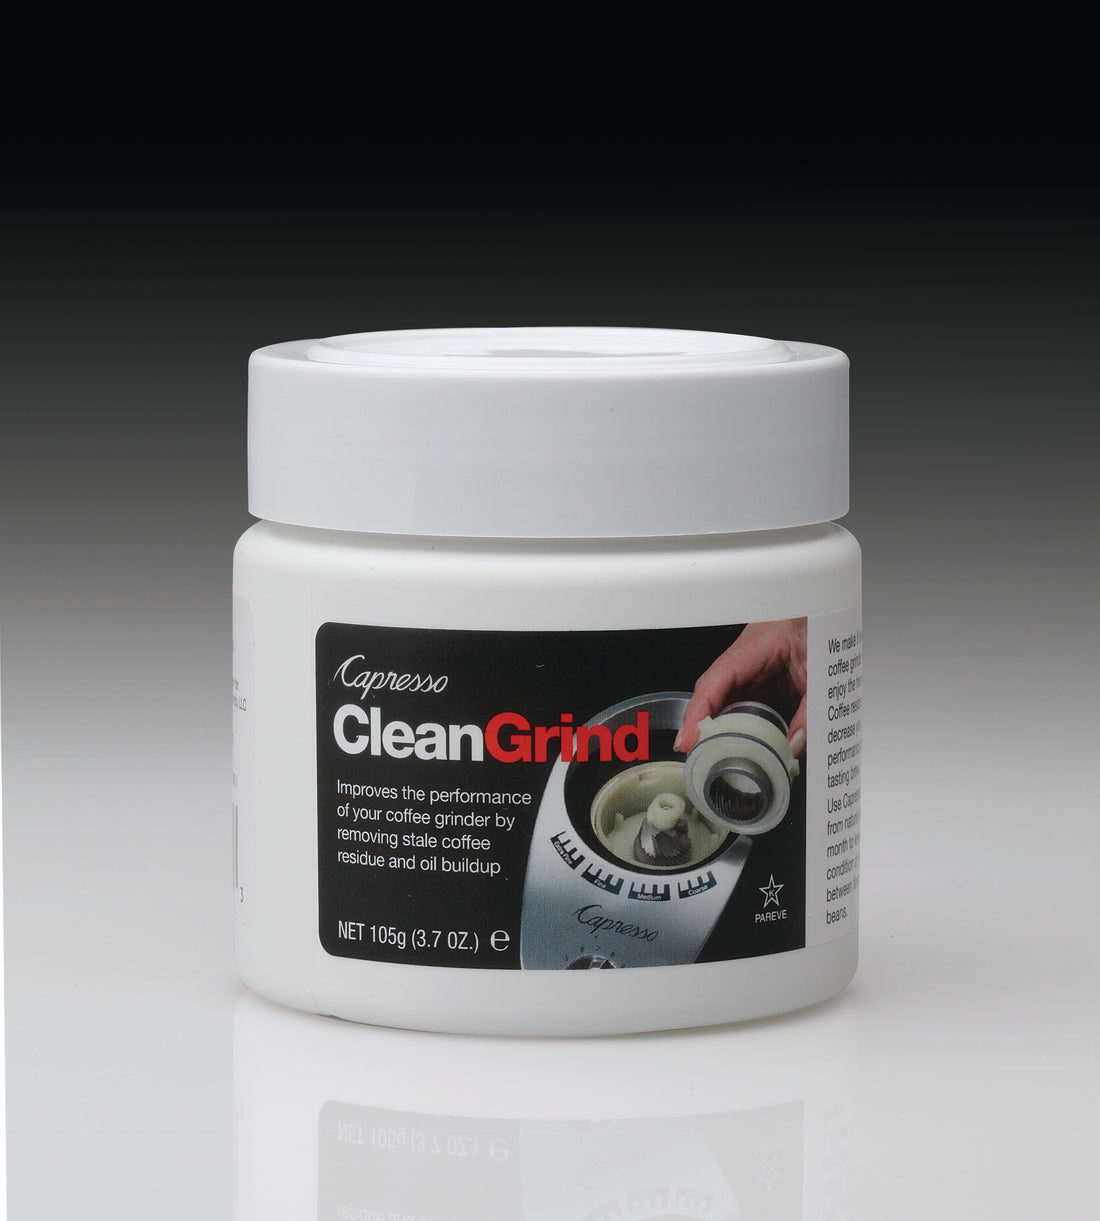 Capresso Clean Grind Grinder Cleaning Tablets